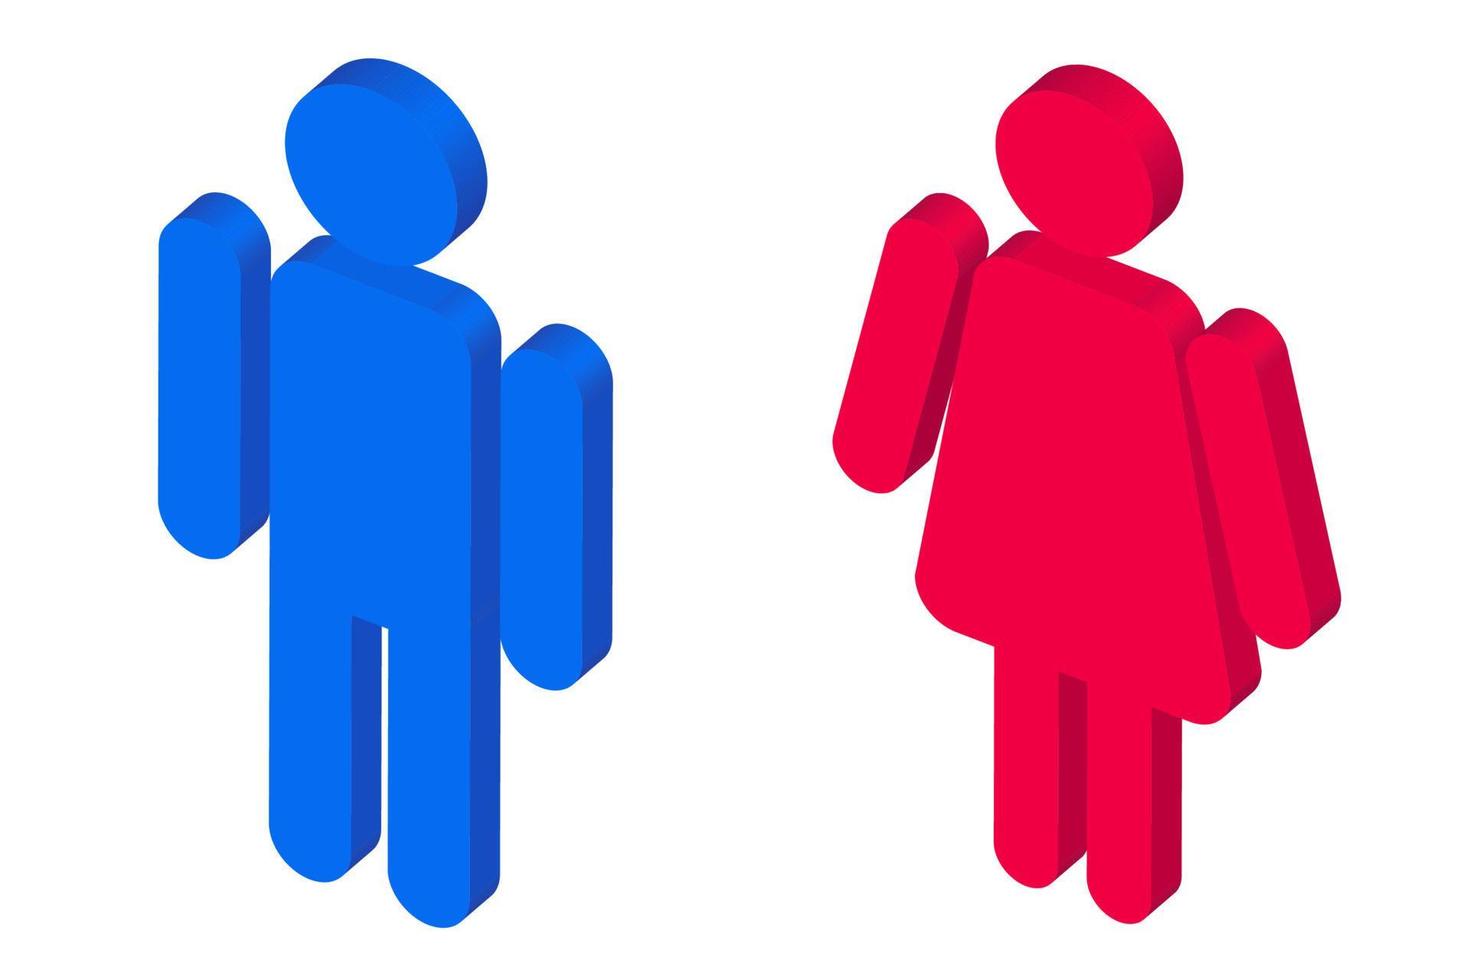 rendering 3d isometrico delle icone dell'uomo e della donna nei colori blu e rosso. illustrazione isometrica dell'icona del bagno isolato su priorità bassa bianca. vettore